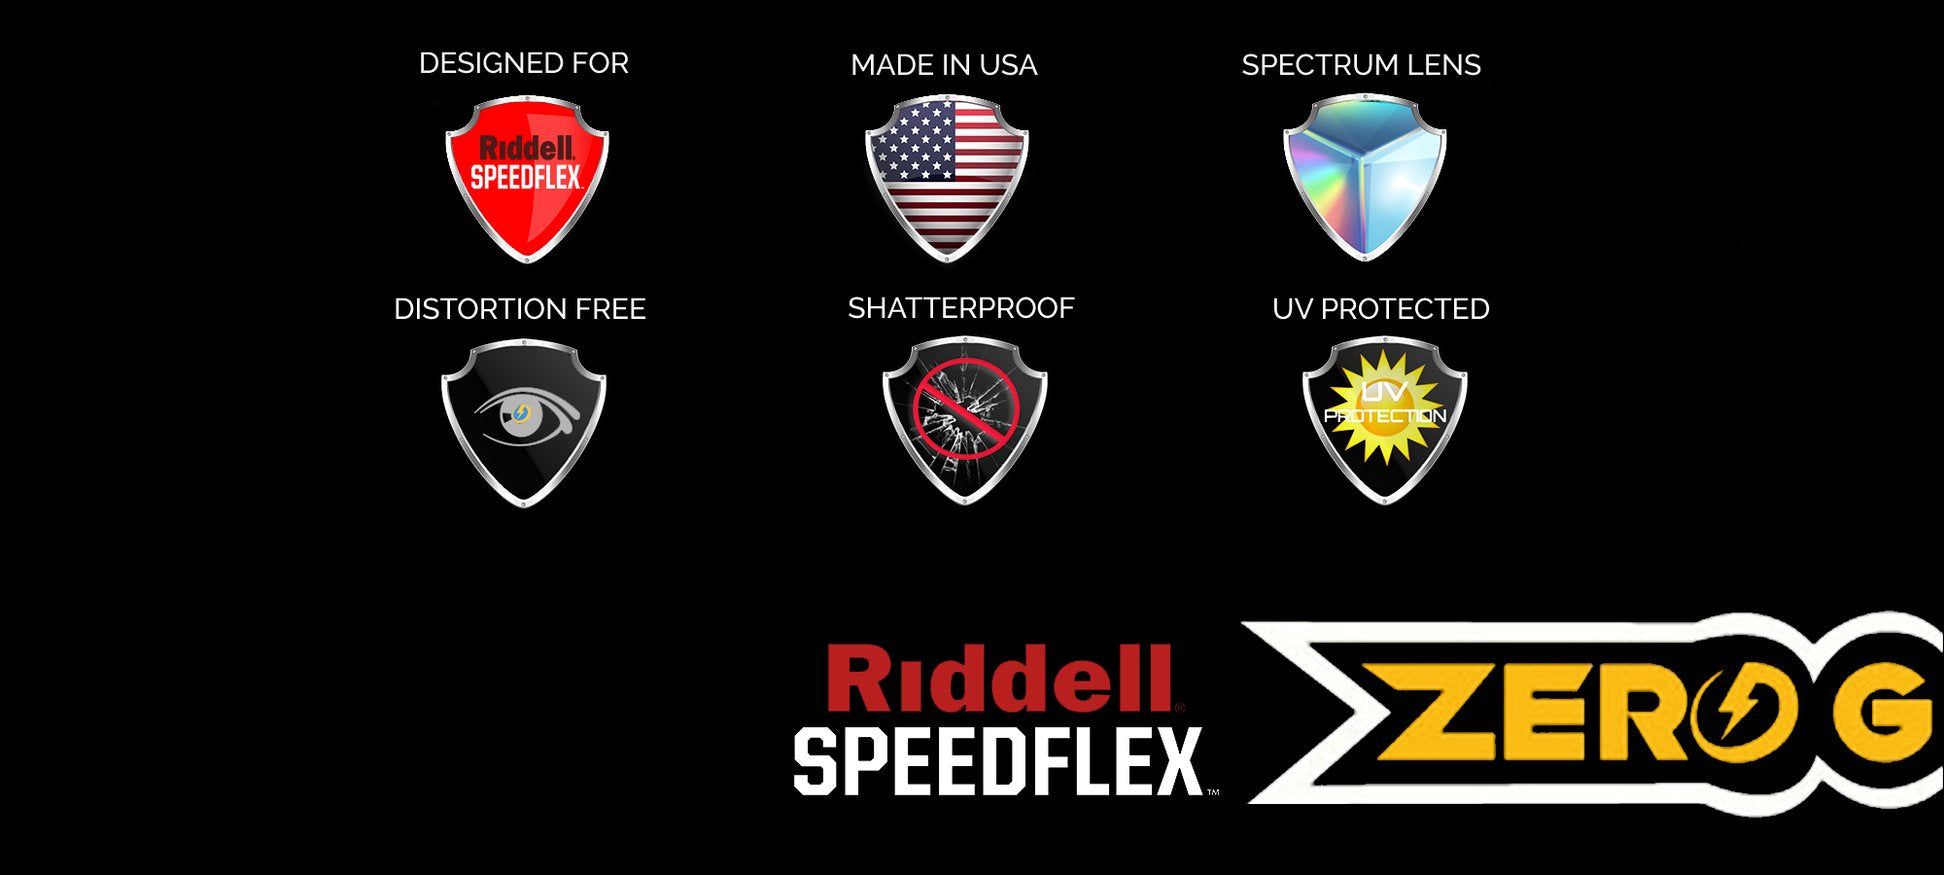 SHOC Zero G Visors are designed for the Ridell Speedflex & shatterproof.